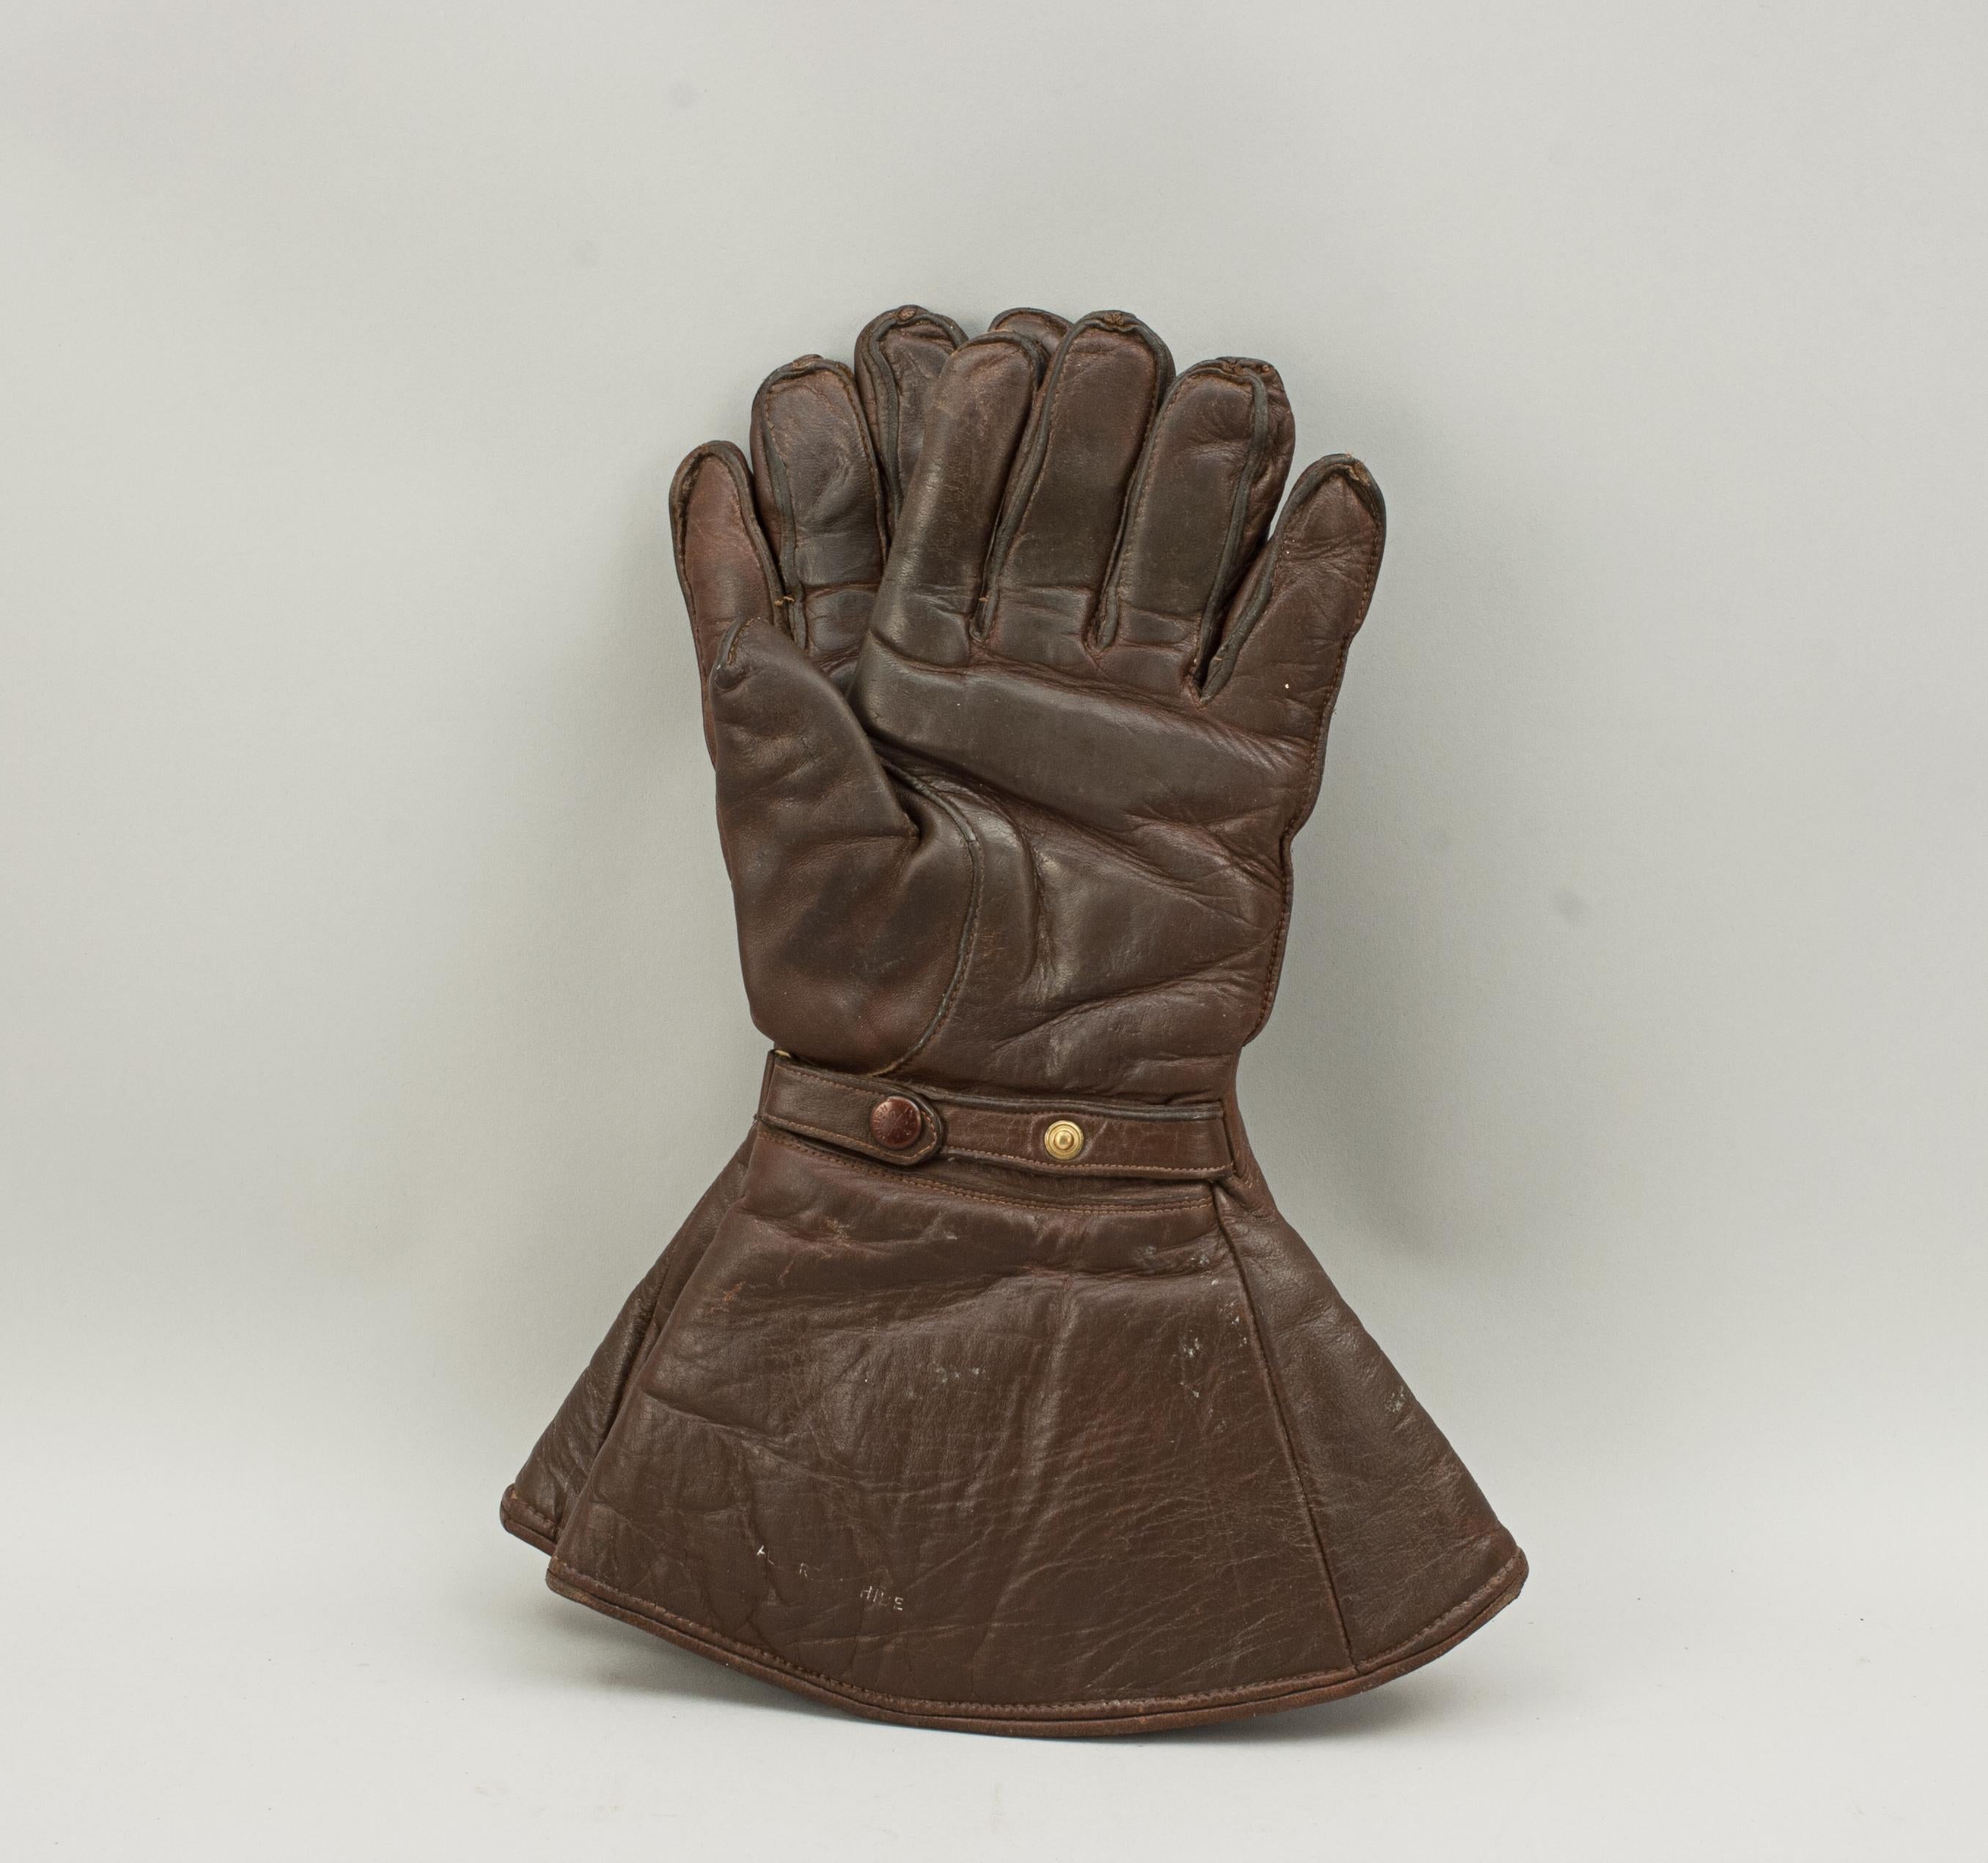 Gants en cuir vintage, gantelets.
Une belle paire de gantelets en cuir pour la conduite automobile par Hutchinson, Londres. Les gants en cuir marron sont doublés de laine et fabriqués en Angleterre. Ce sont des gants utilisables pour une main